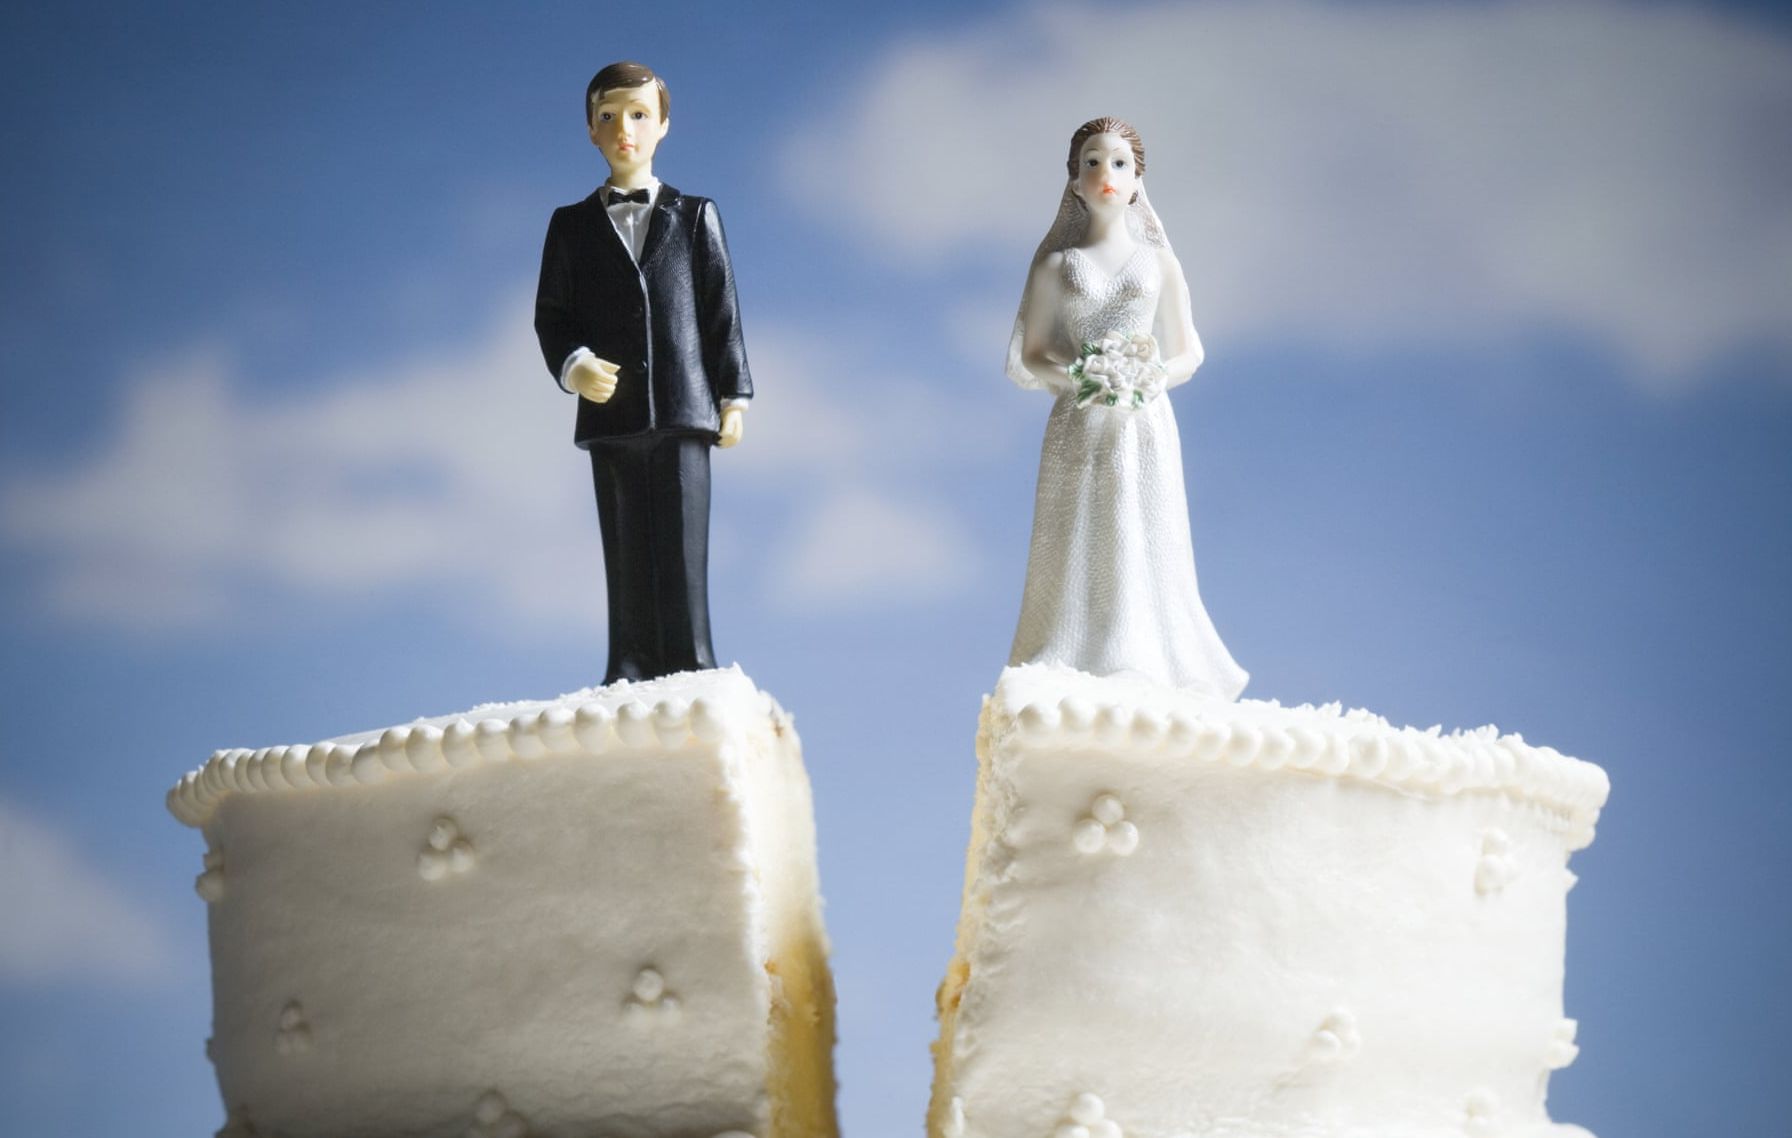 Razvod braka (Svadbena torta)